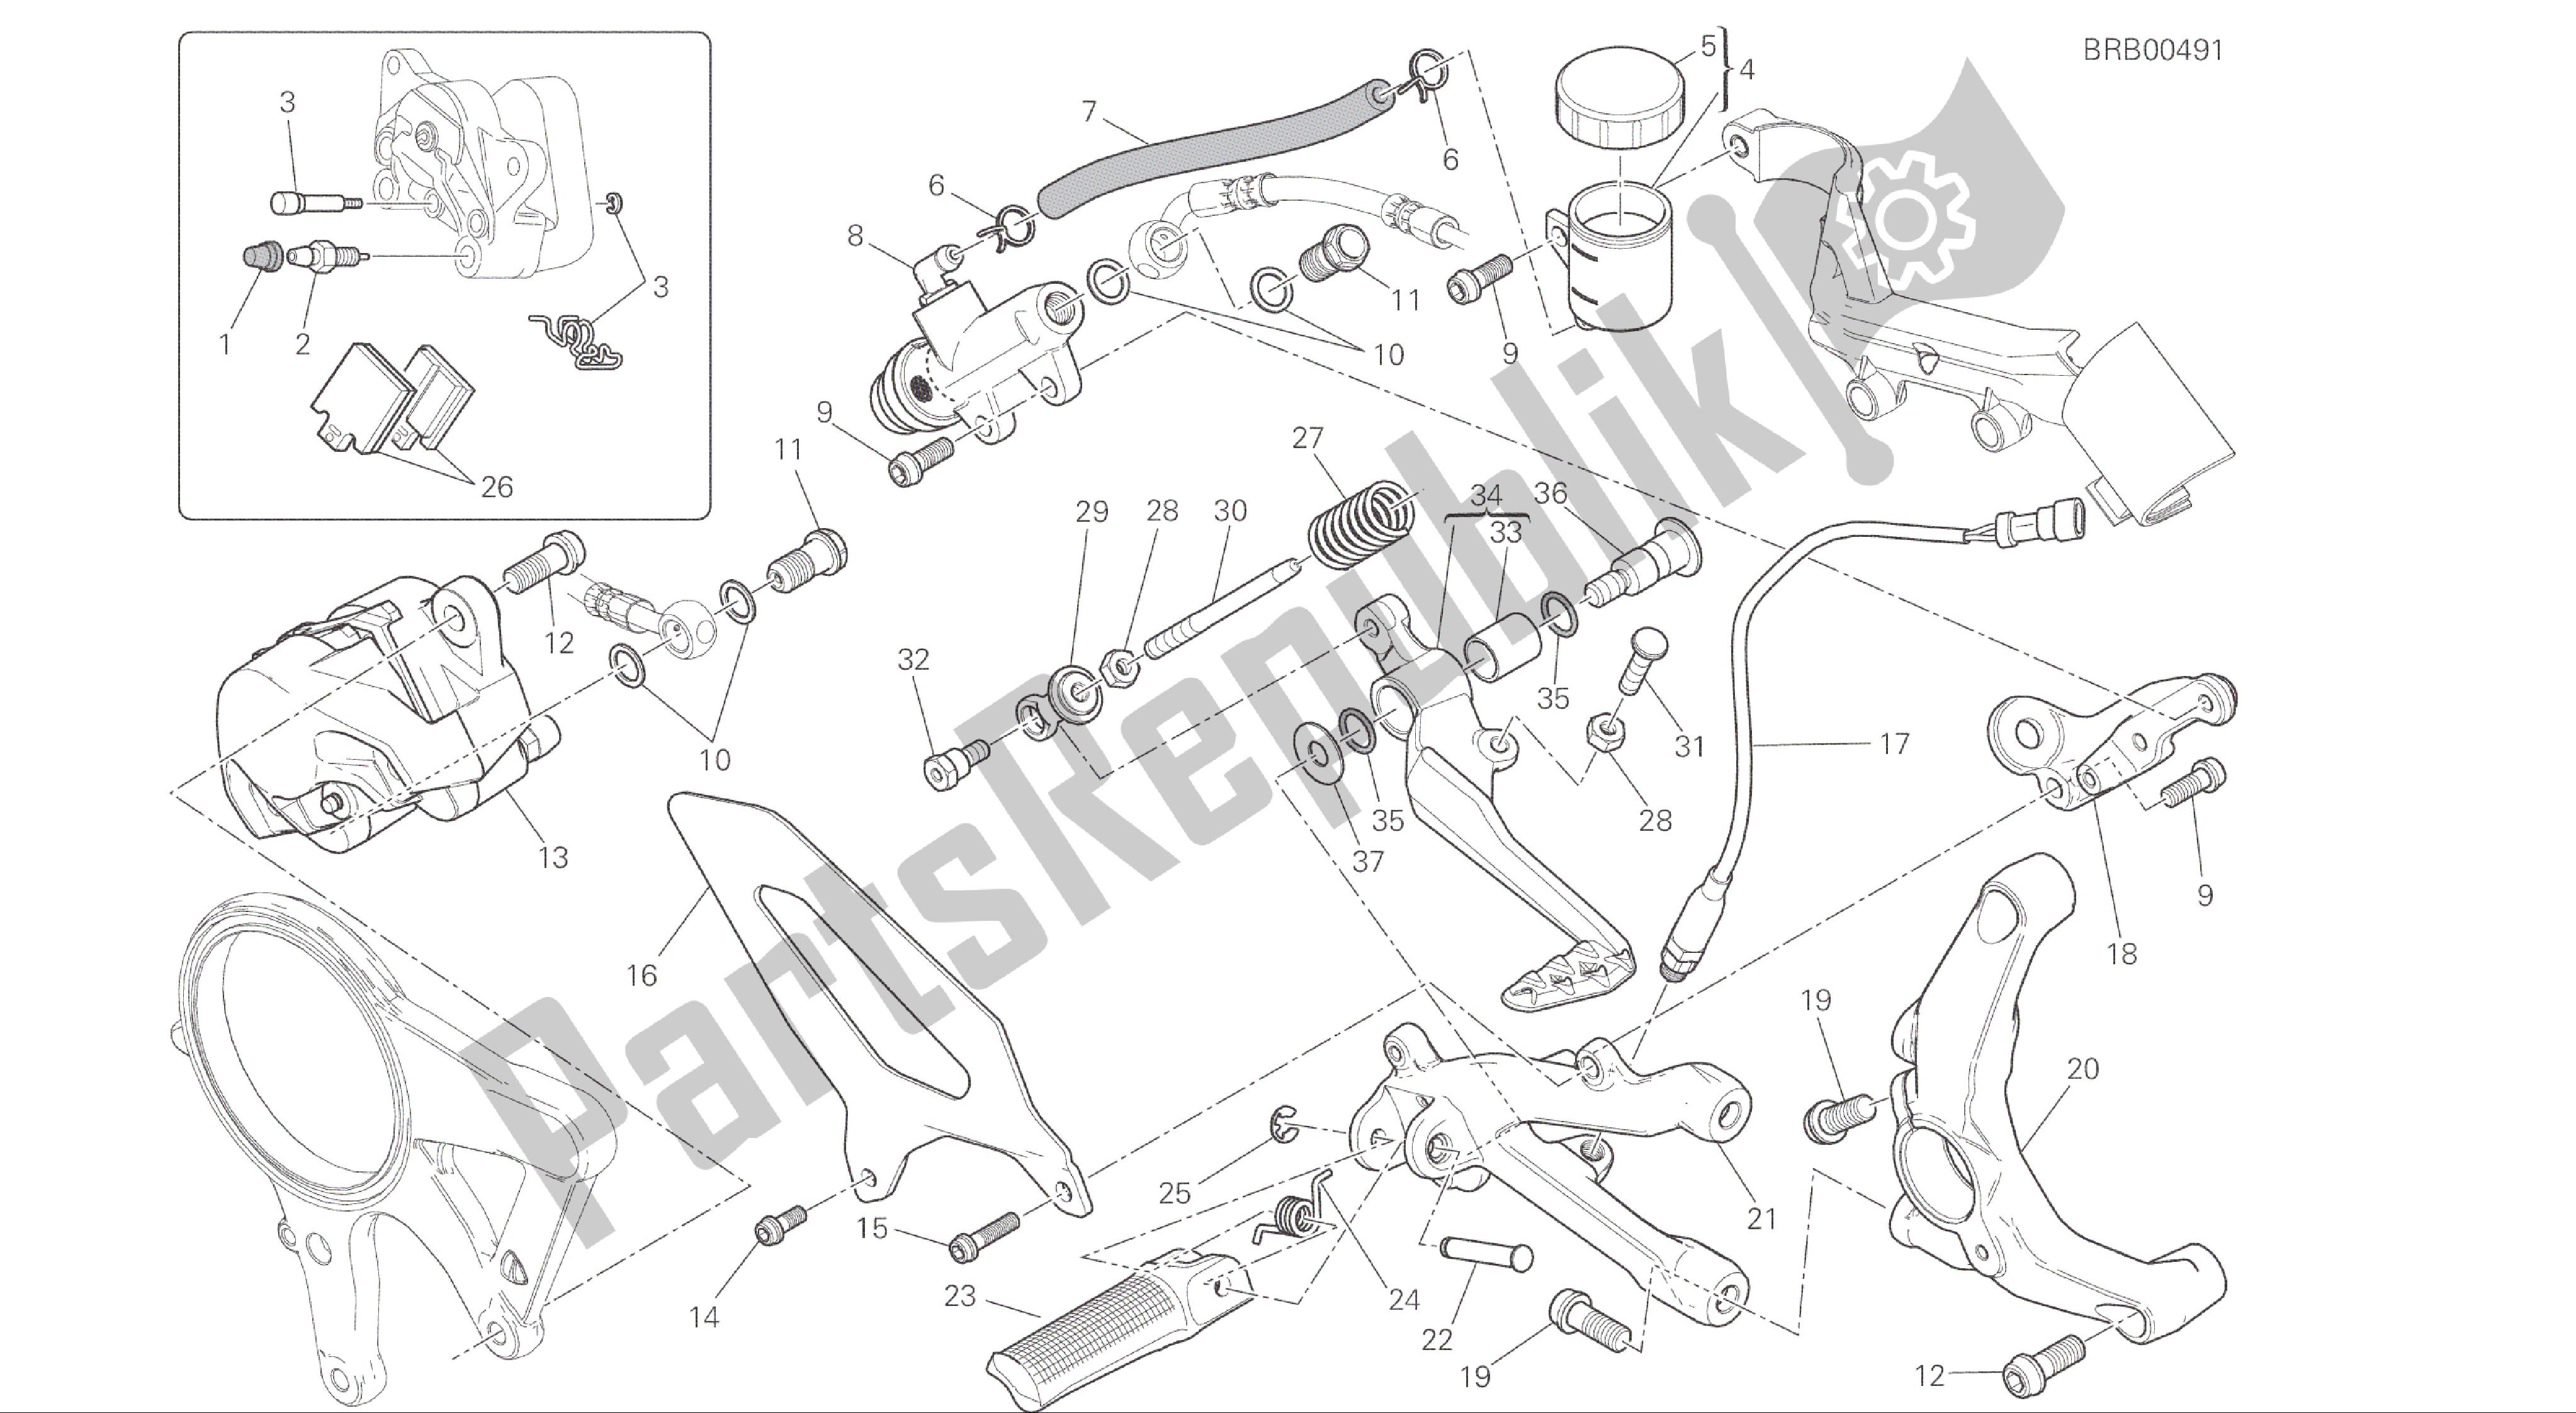 Alle onderdelen voor de Tekening 025 - Freno Posteriore [mod: 1299; Xst: Aus, Eur, Fra, Jap, Twn] Groepsframe van de Ducati Panigale ABS 1299 2016